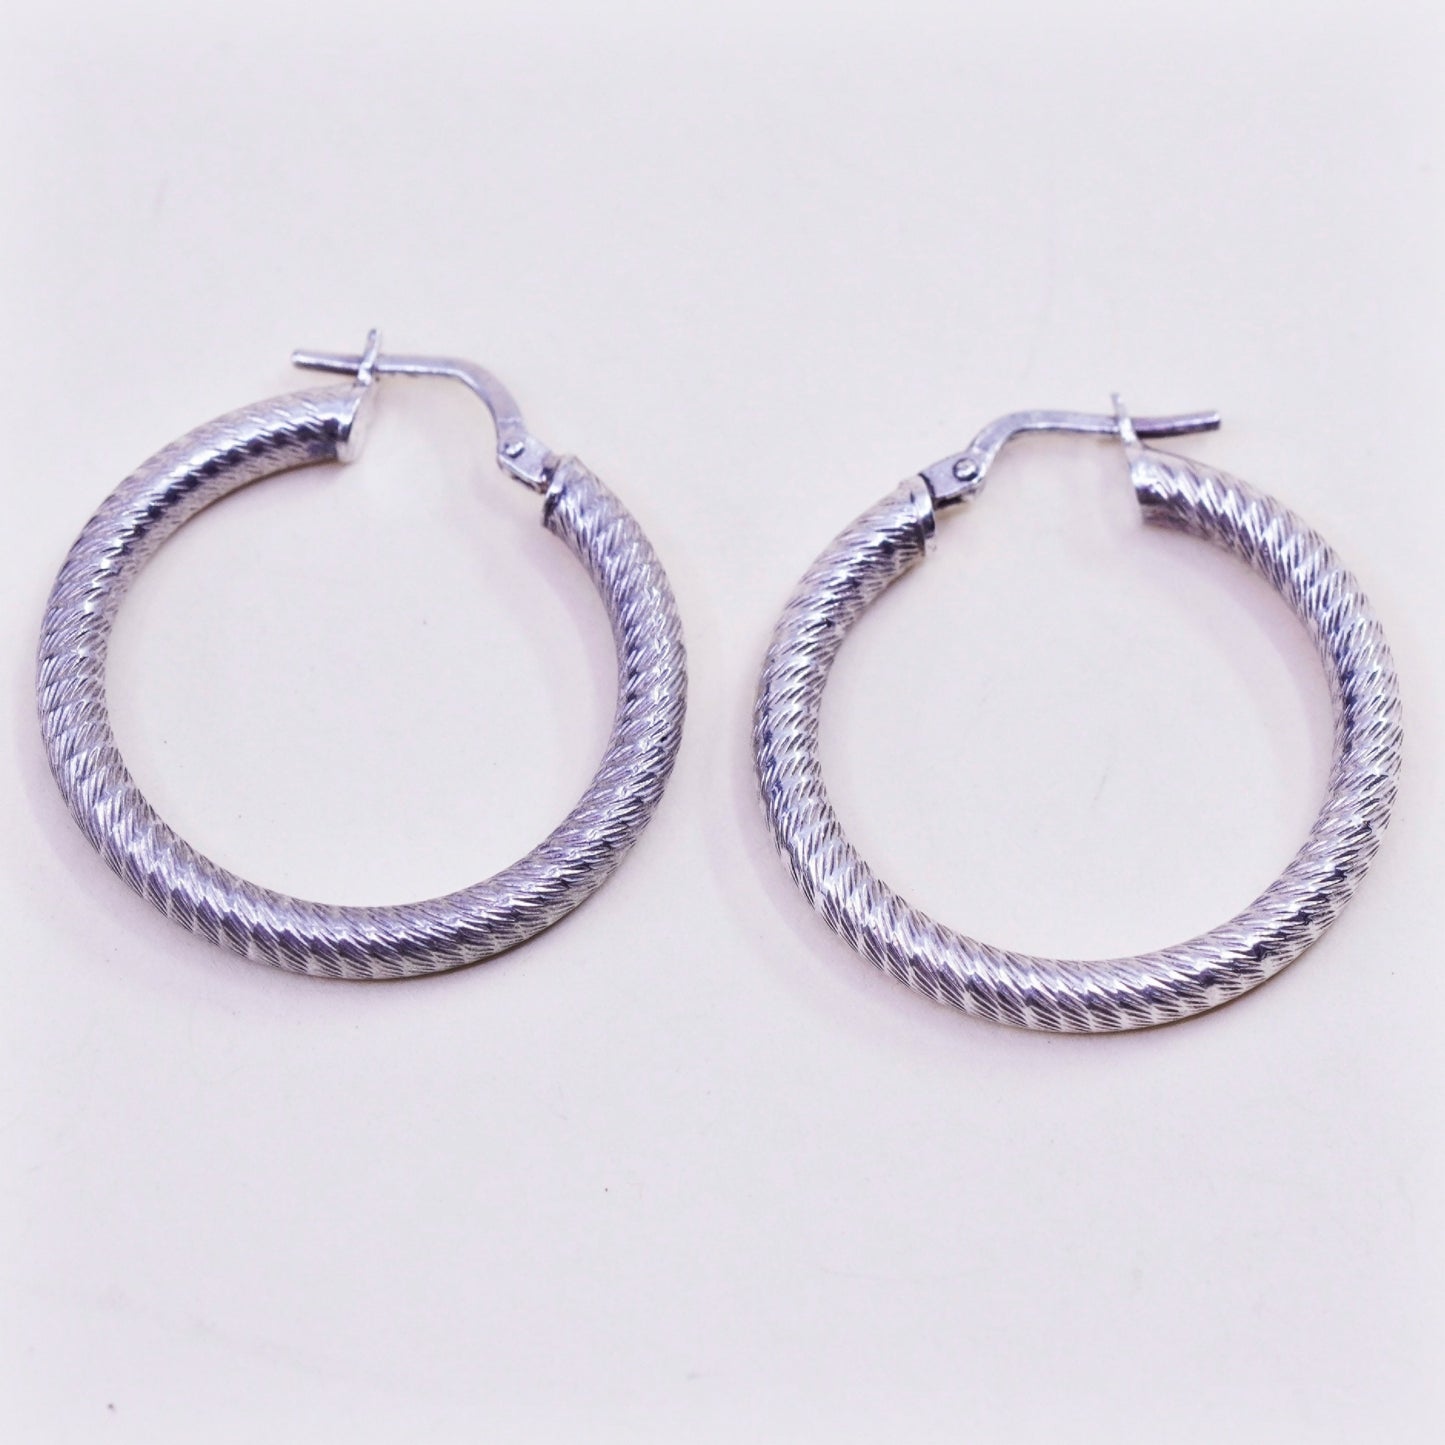 1” Vintage sterling silver loop earrings, textured primitive hoops